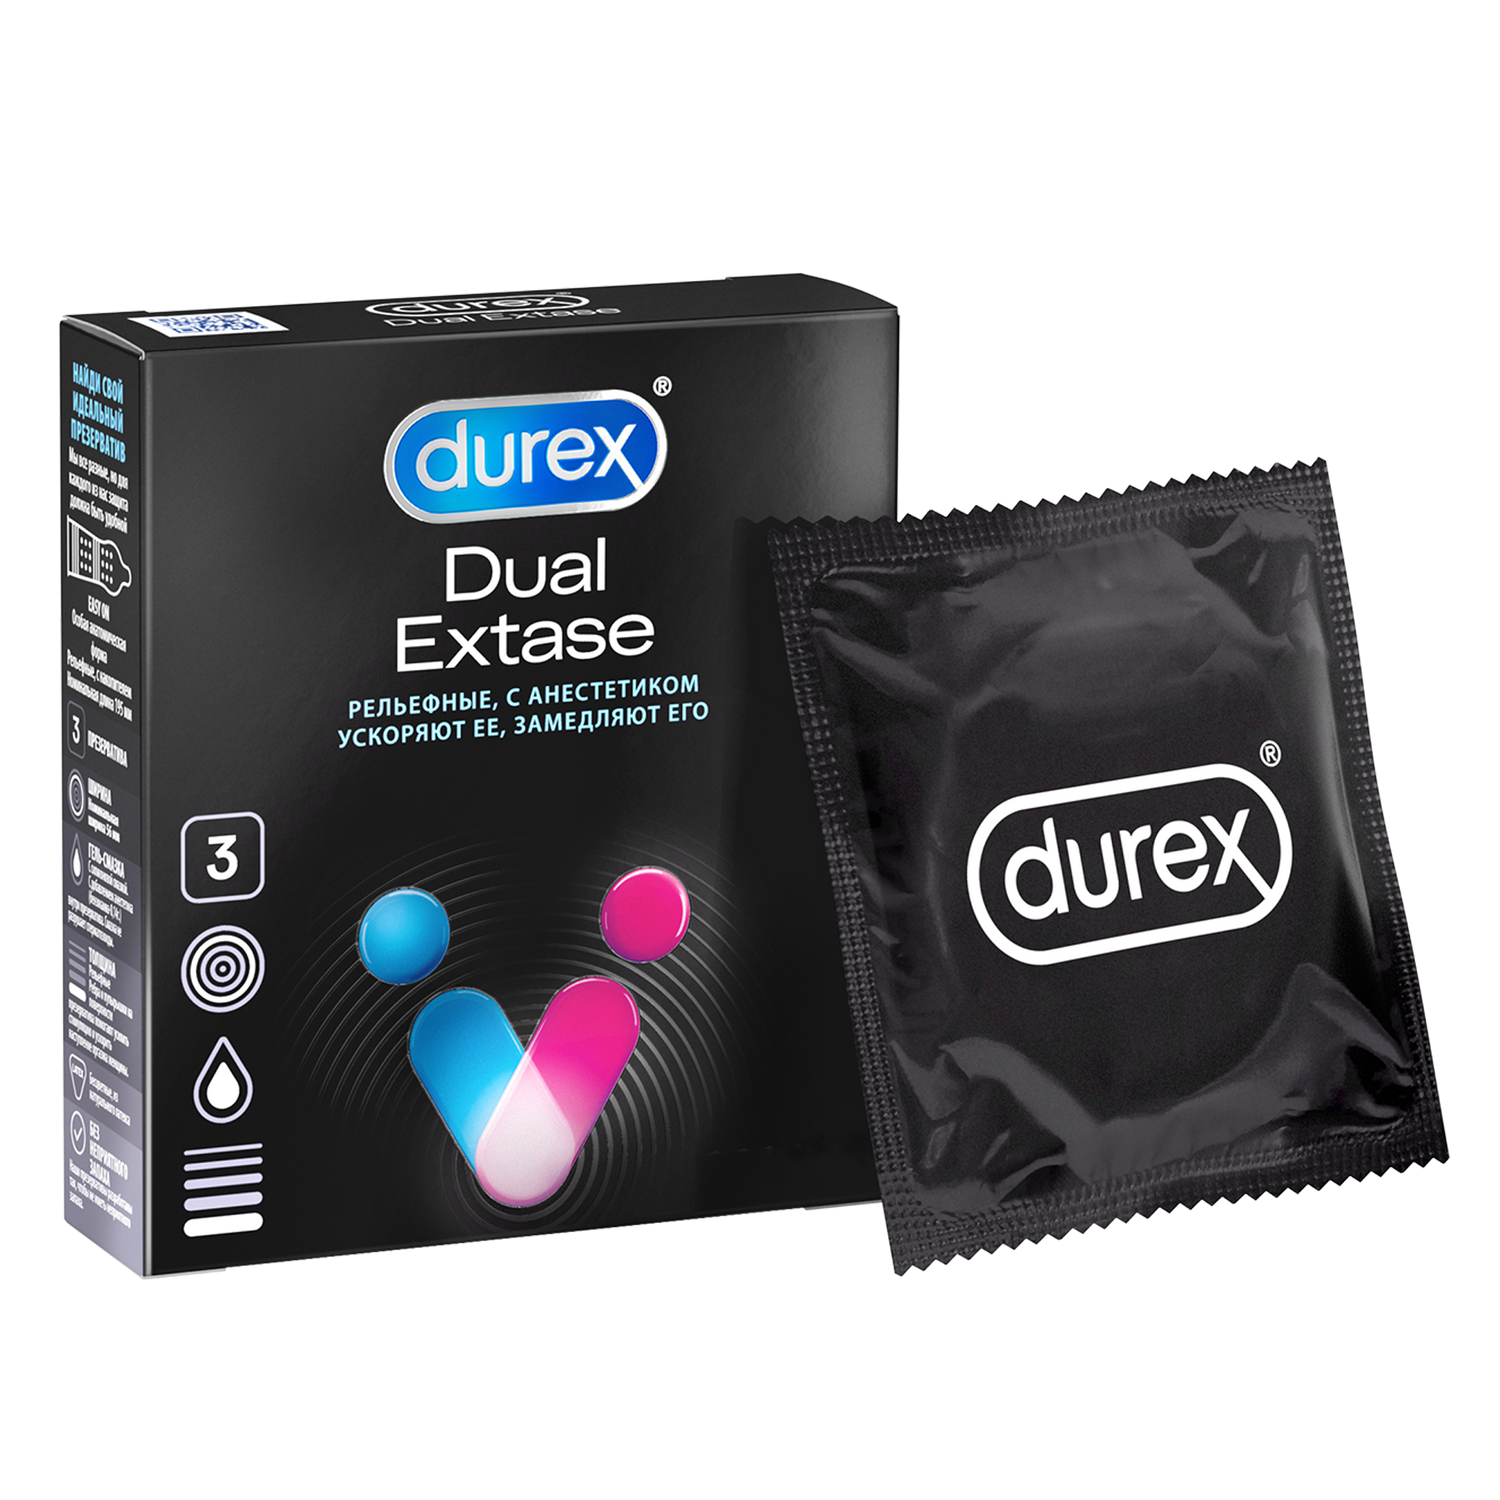 Презервативы Durex Dual Extase, рельефные с анестетиком, 3 шт. презервативы sico 12 марафон классические с анестетиком